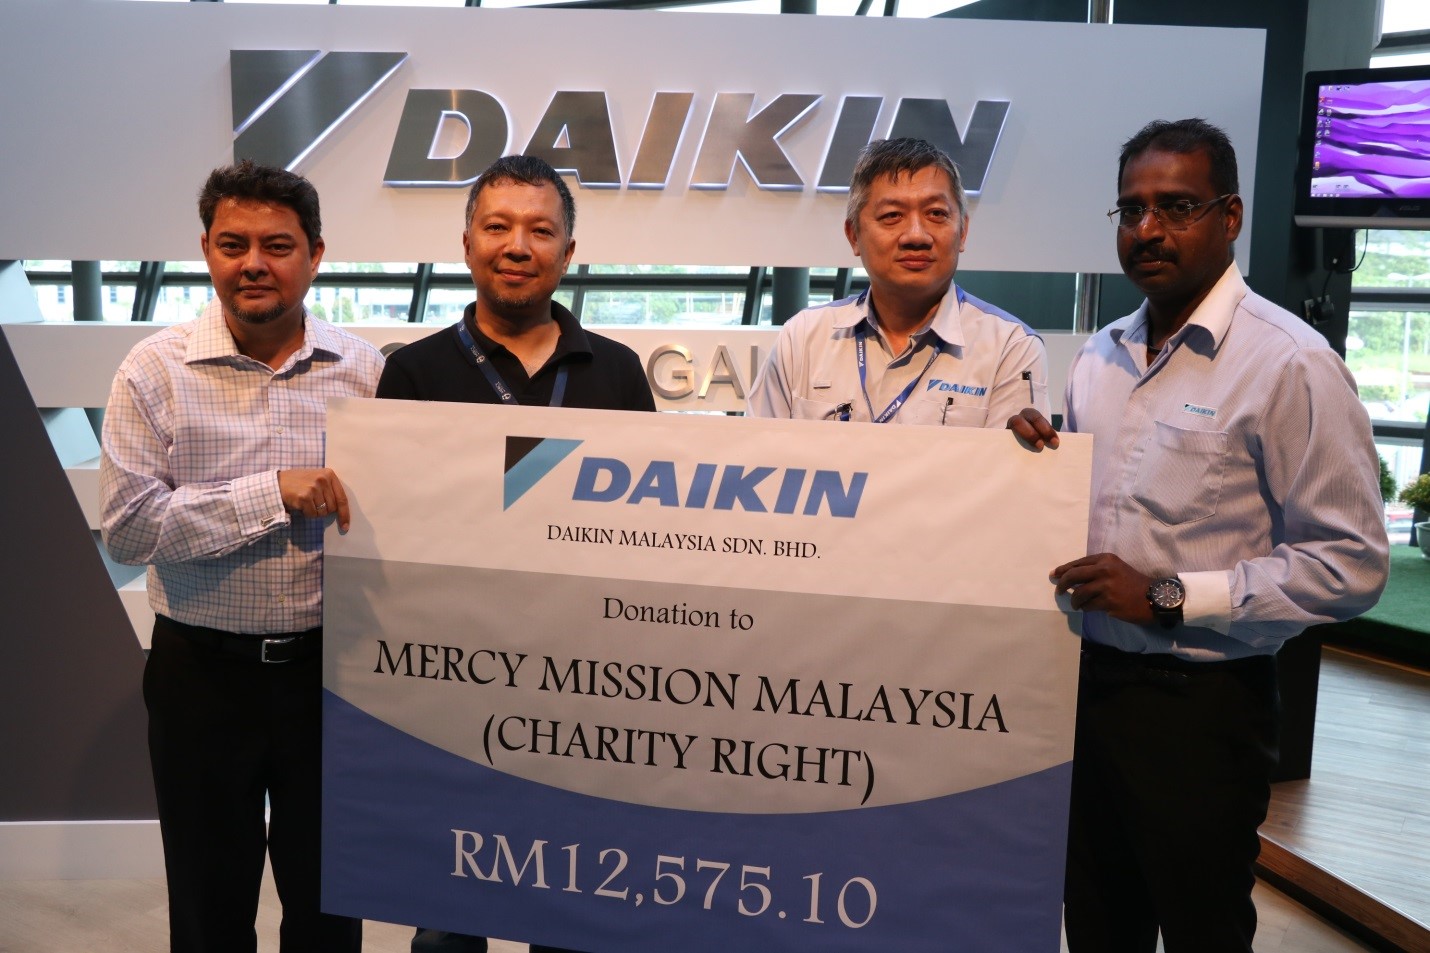 Sale for Charity | Daikin Malaysia Sdn. Bhd.